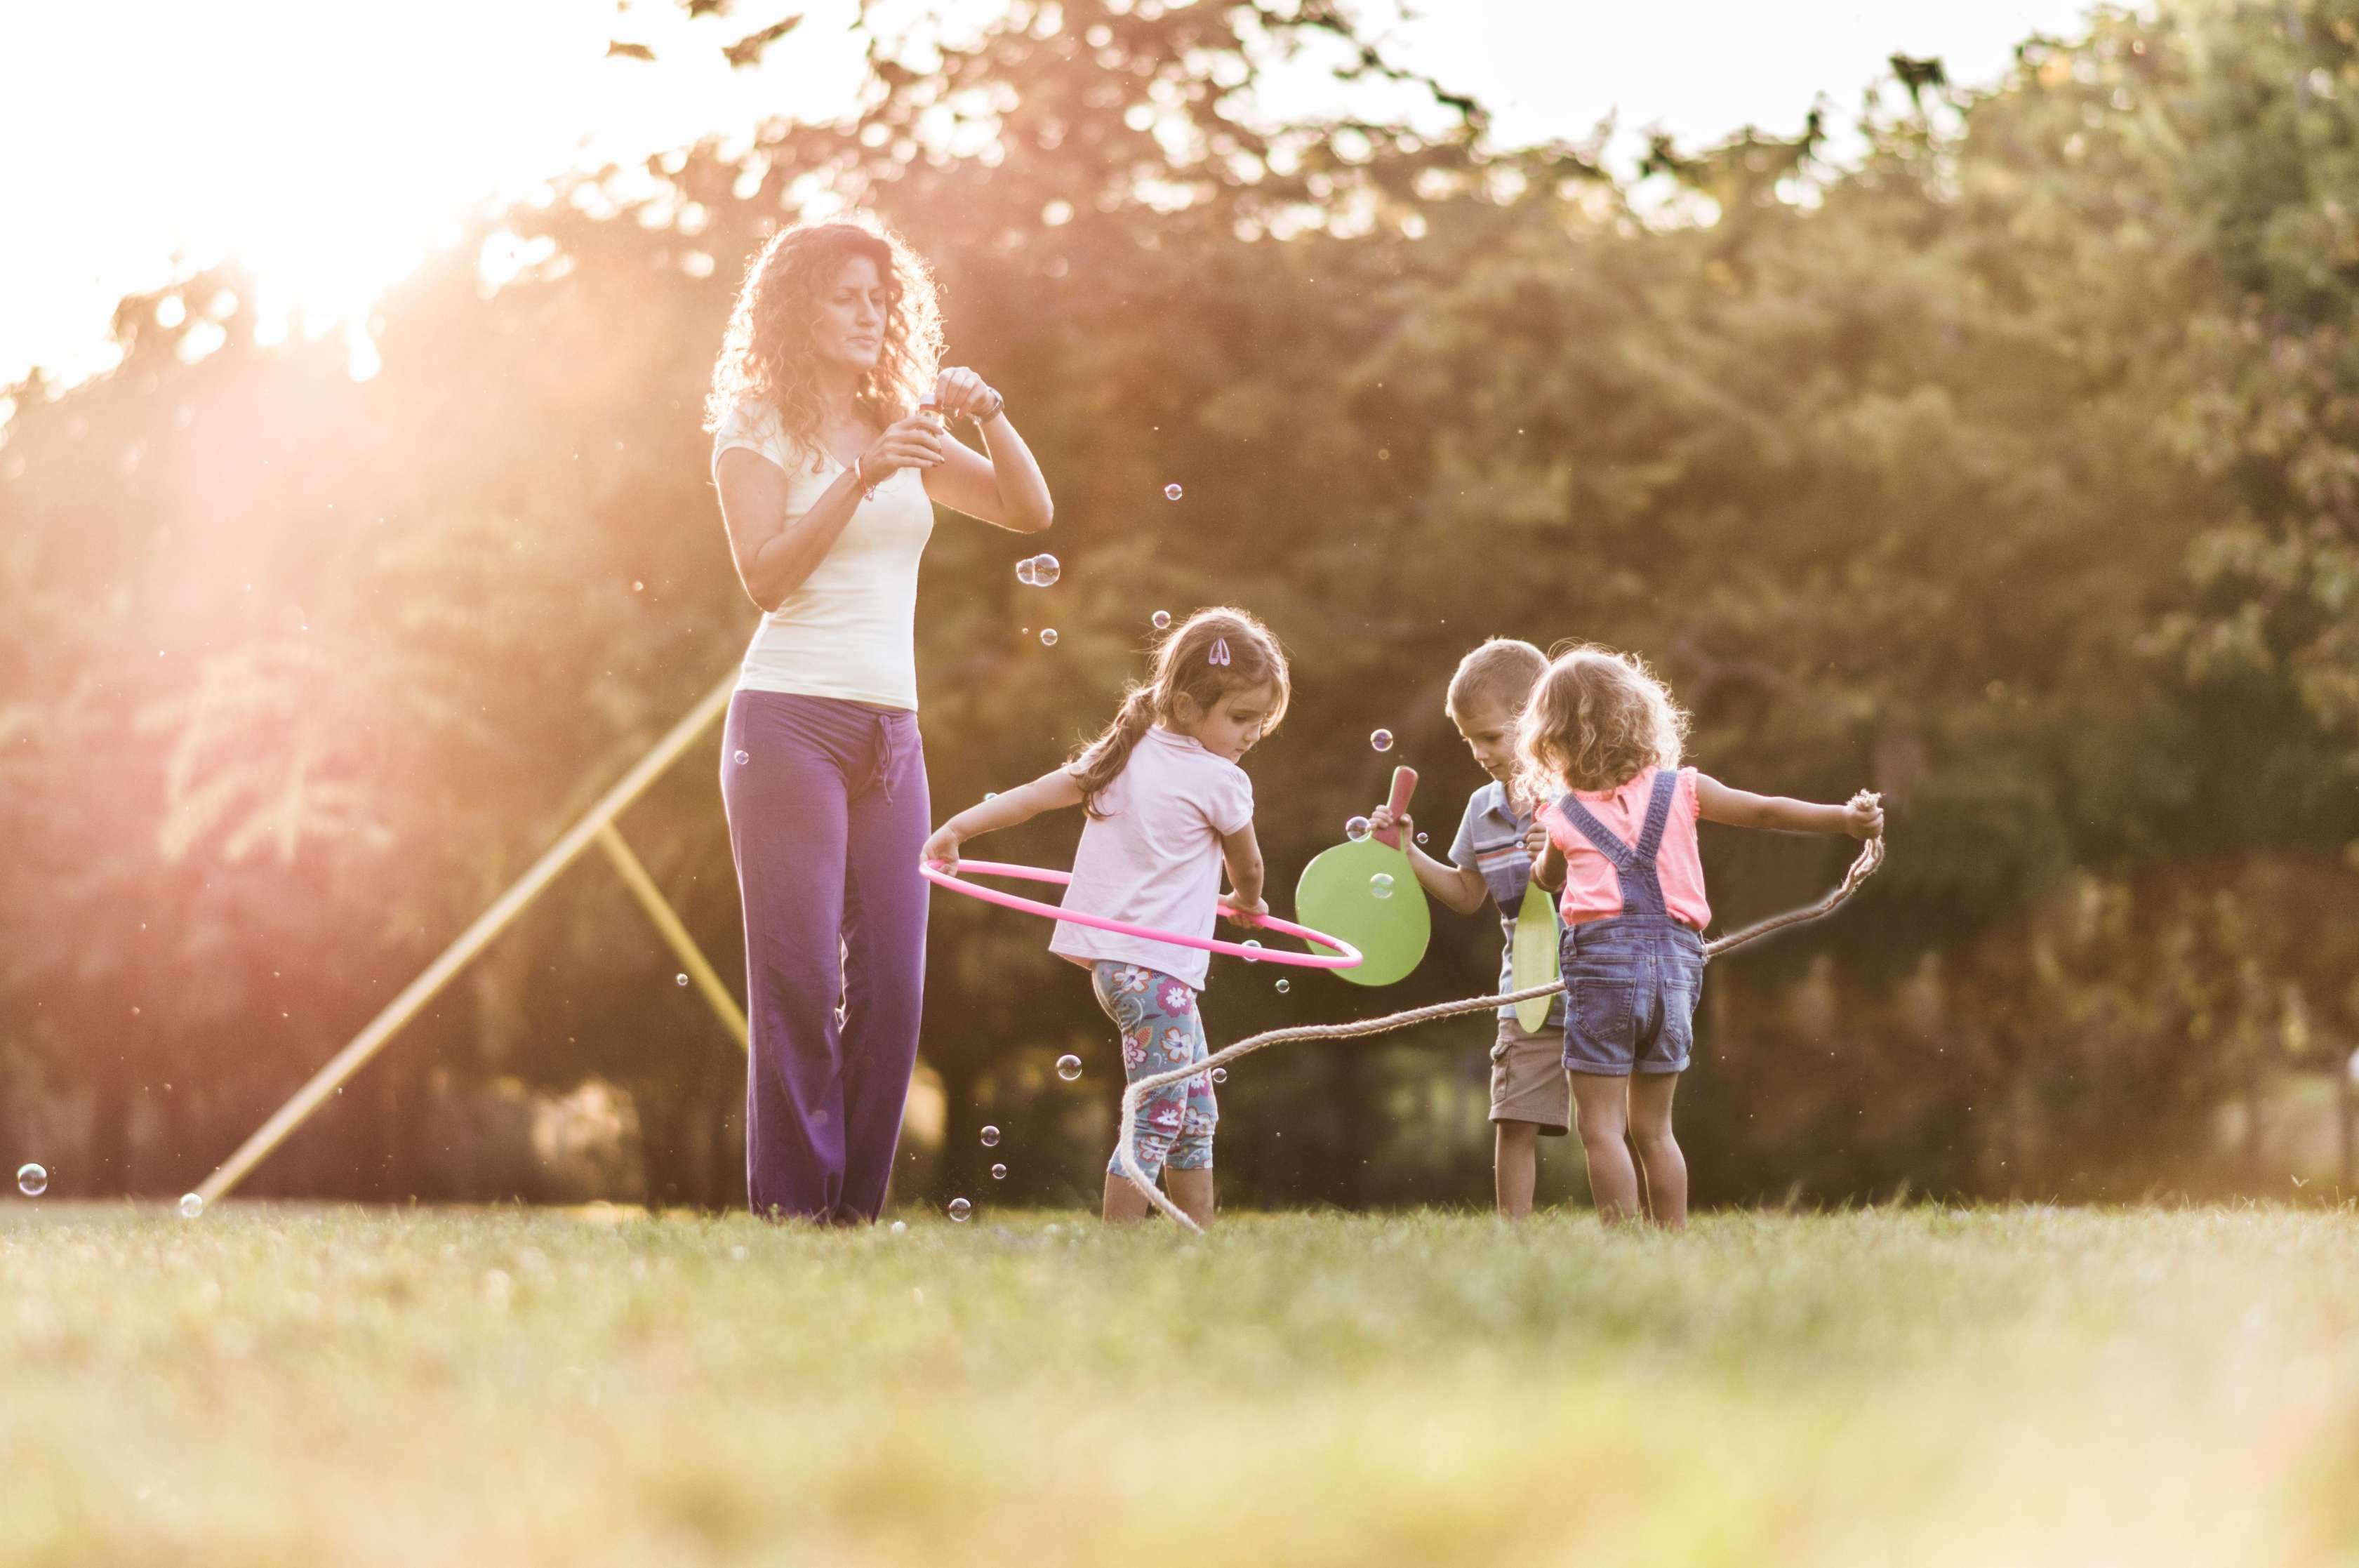 Eine junge Kindergärtnerin steht mit drei spielenden Kindern im Garten und bläst Seifenblasen.